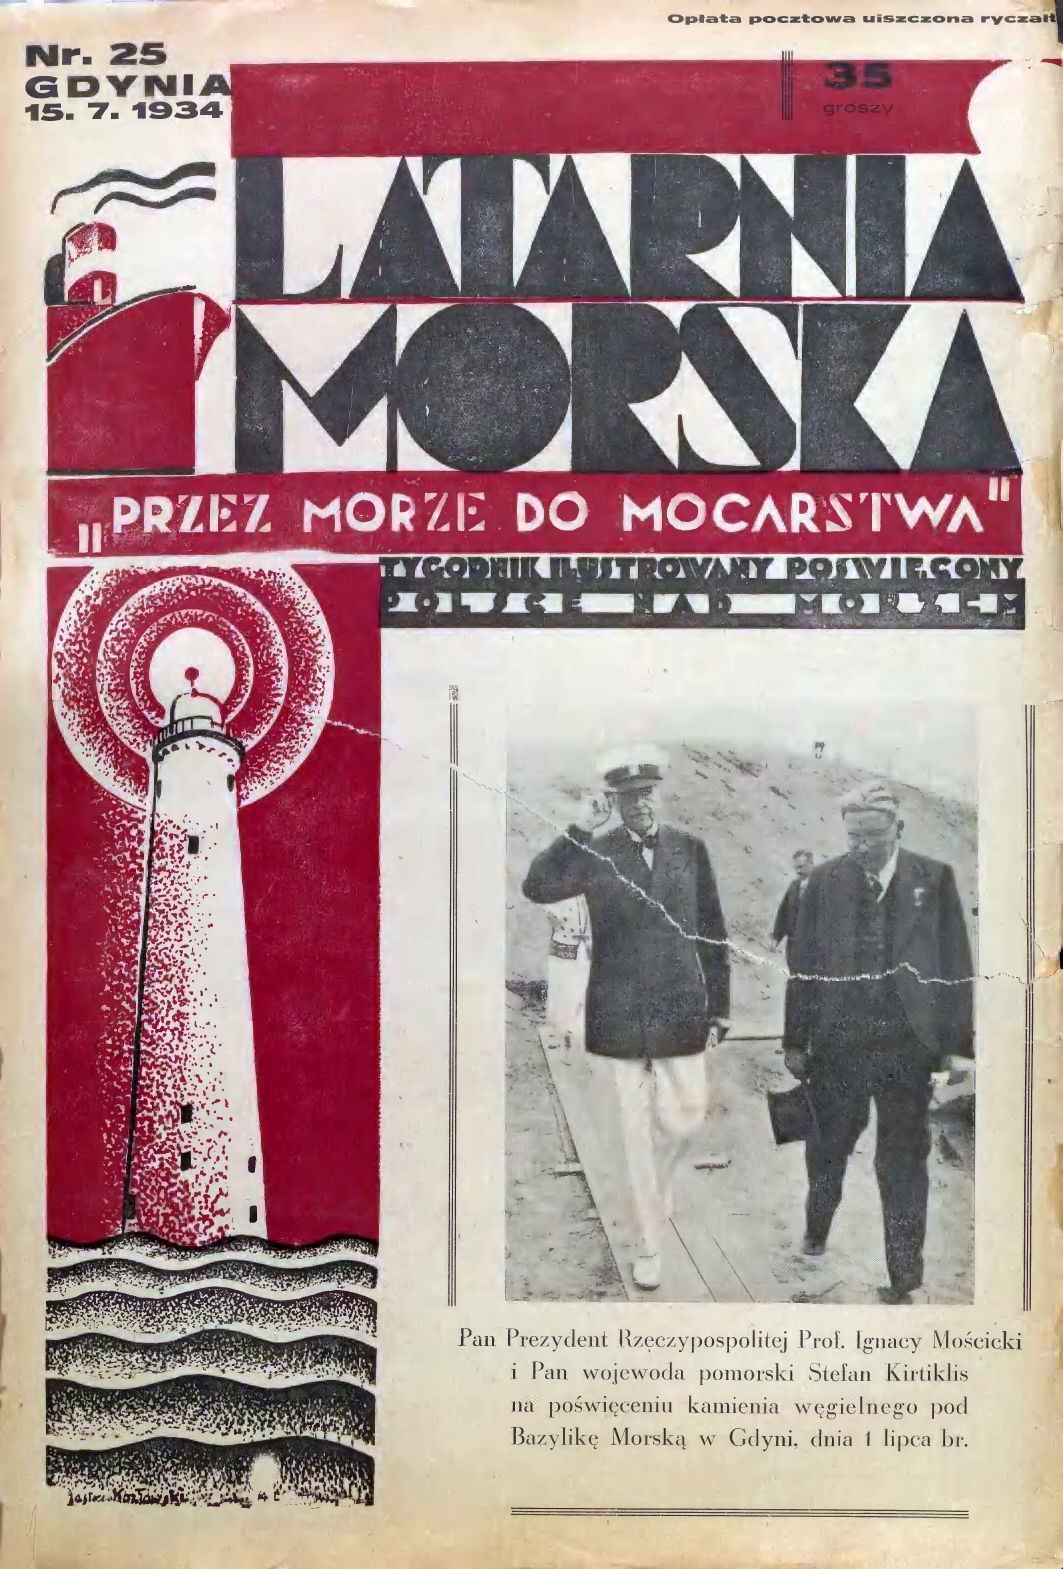 Latarnia Morska: tygodnik ilustrowany poświęcony Polsce nad morzem. – Gdynia : Balto Polak – Zakłady Graficzne i Wydawnicze, 1934, nr 46